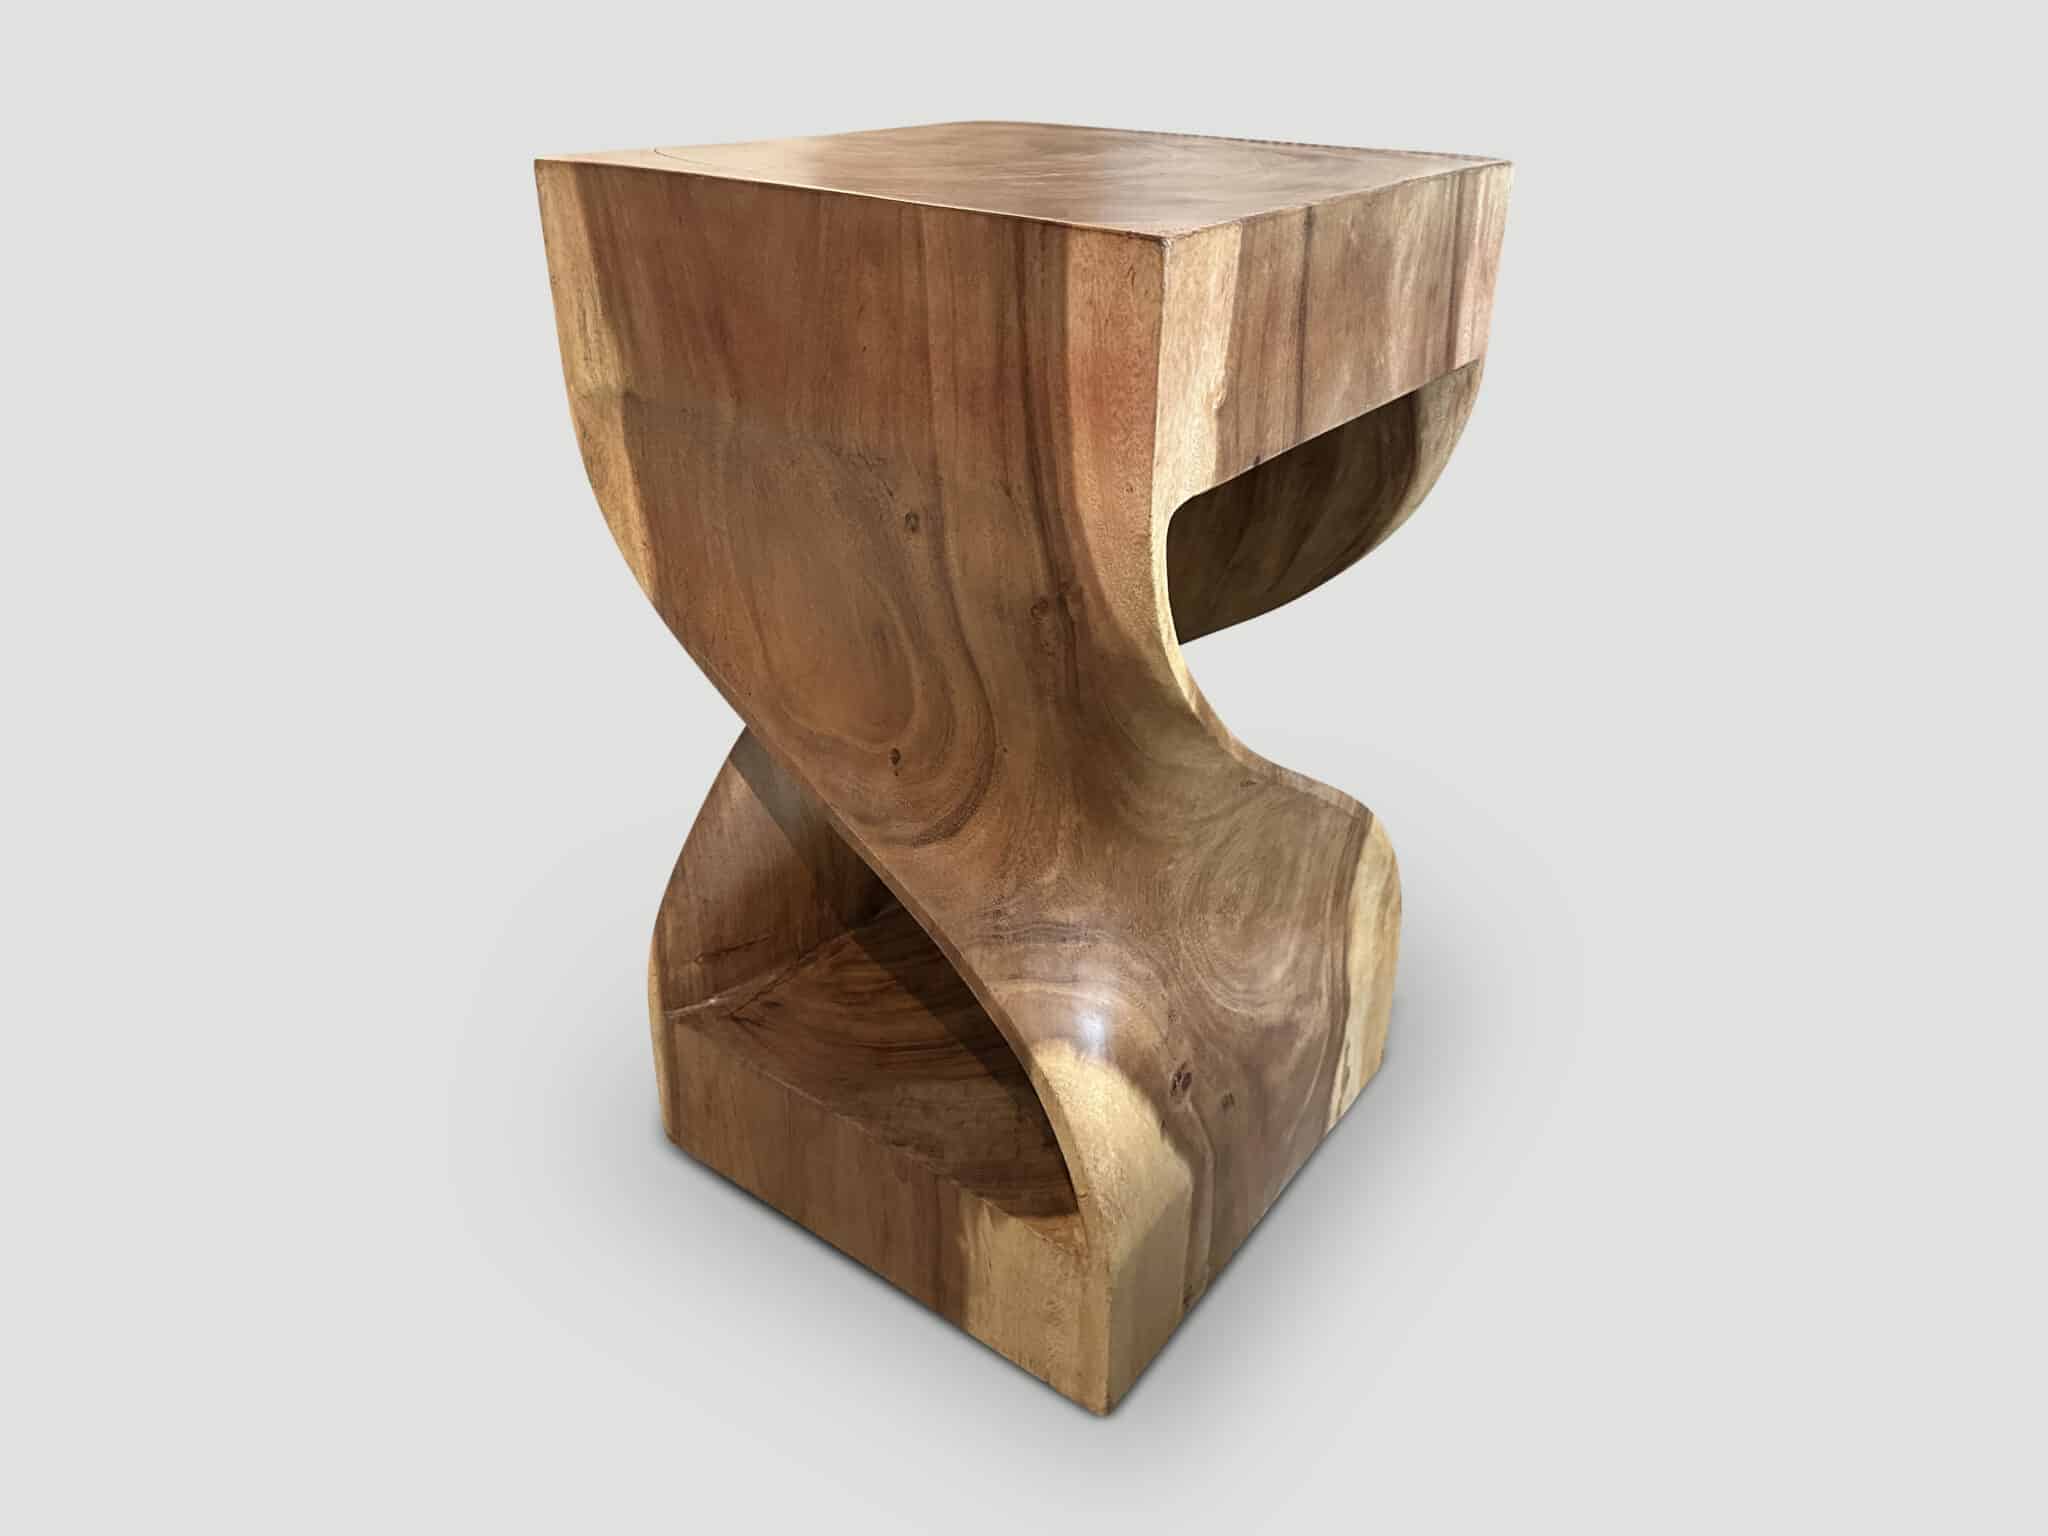 sculptural side table or pedestal